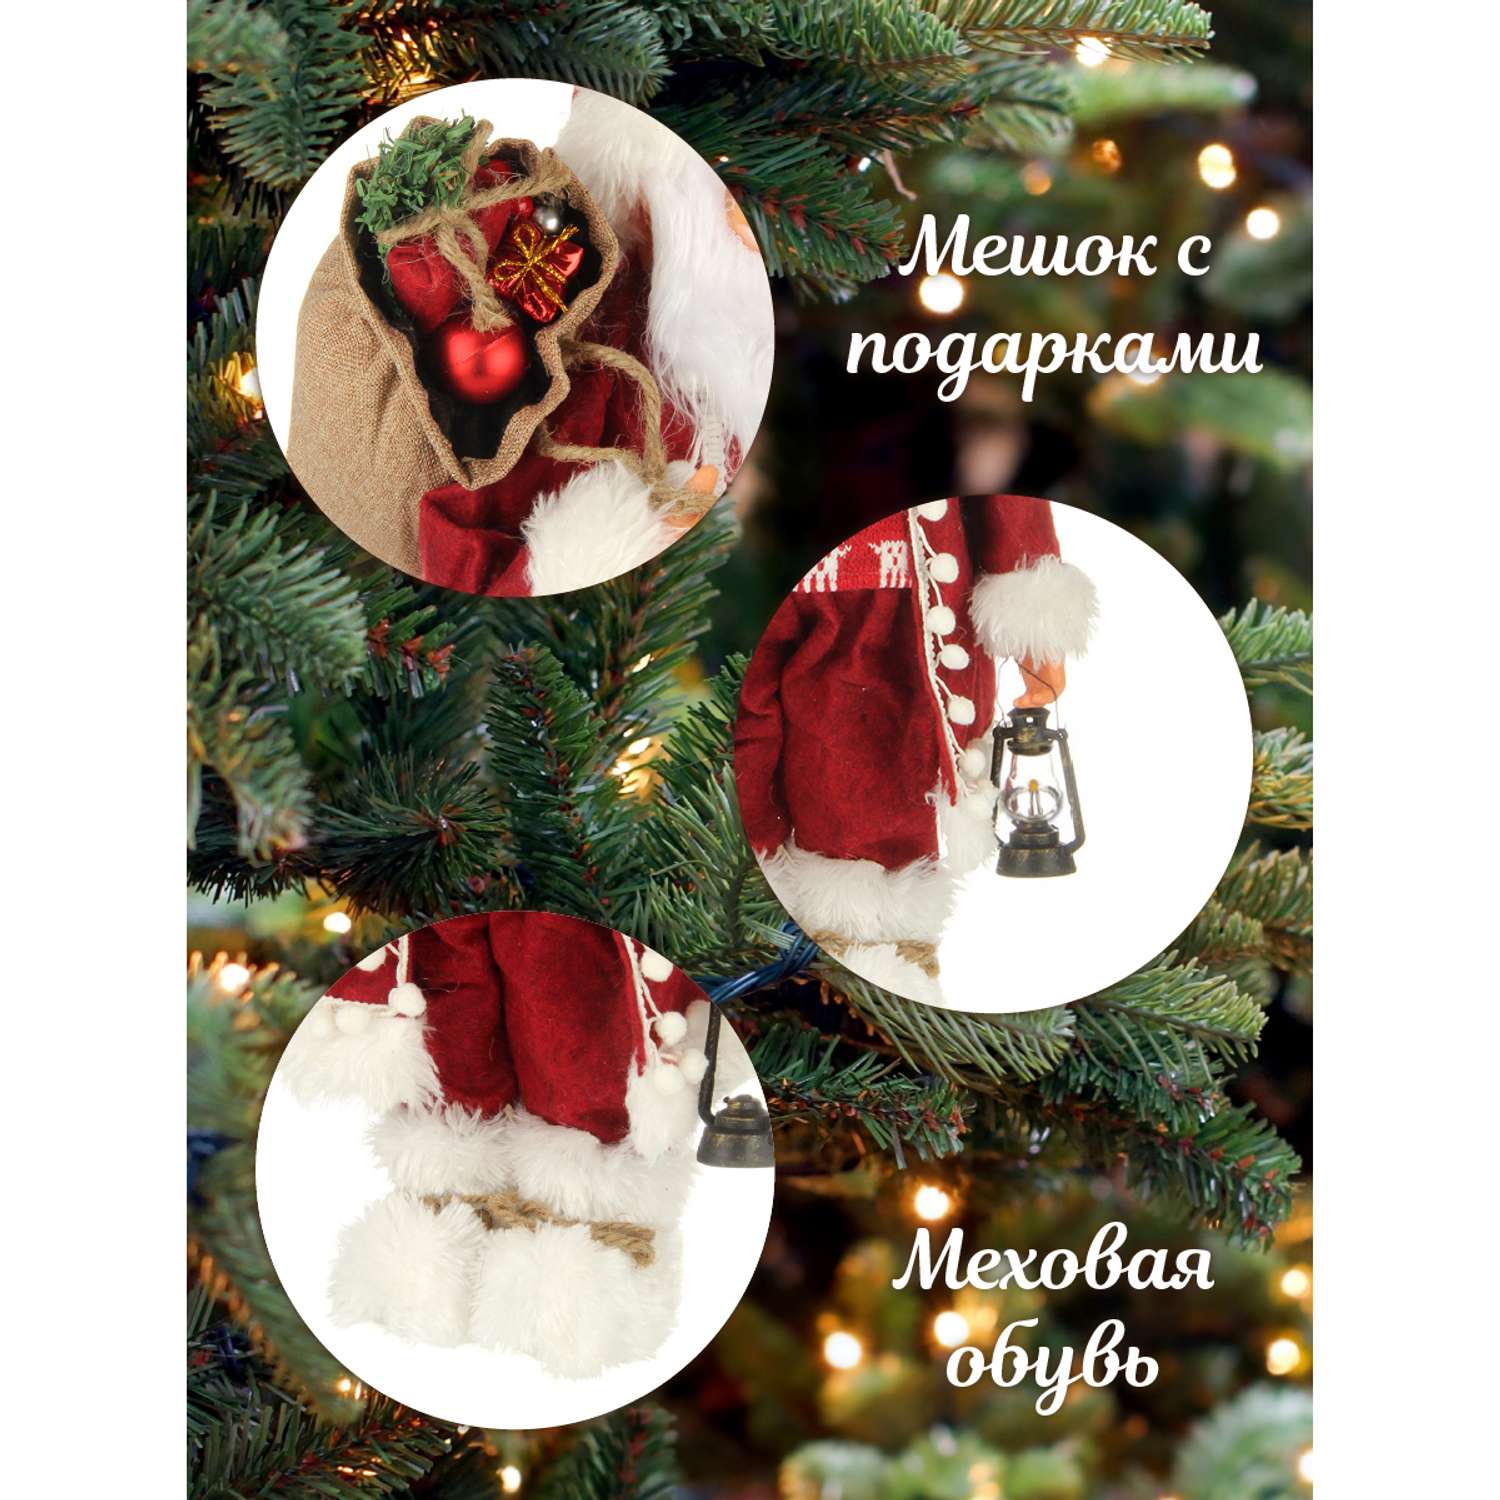 Дед Мороз Весёлый хоровод 45 см - фото 3